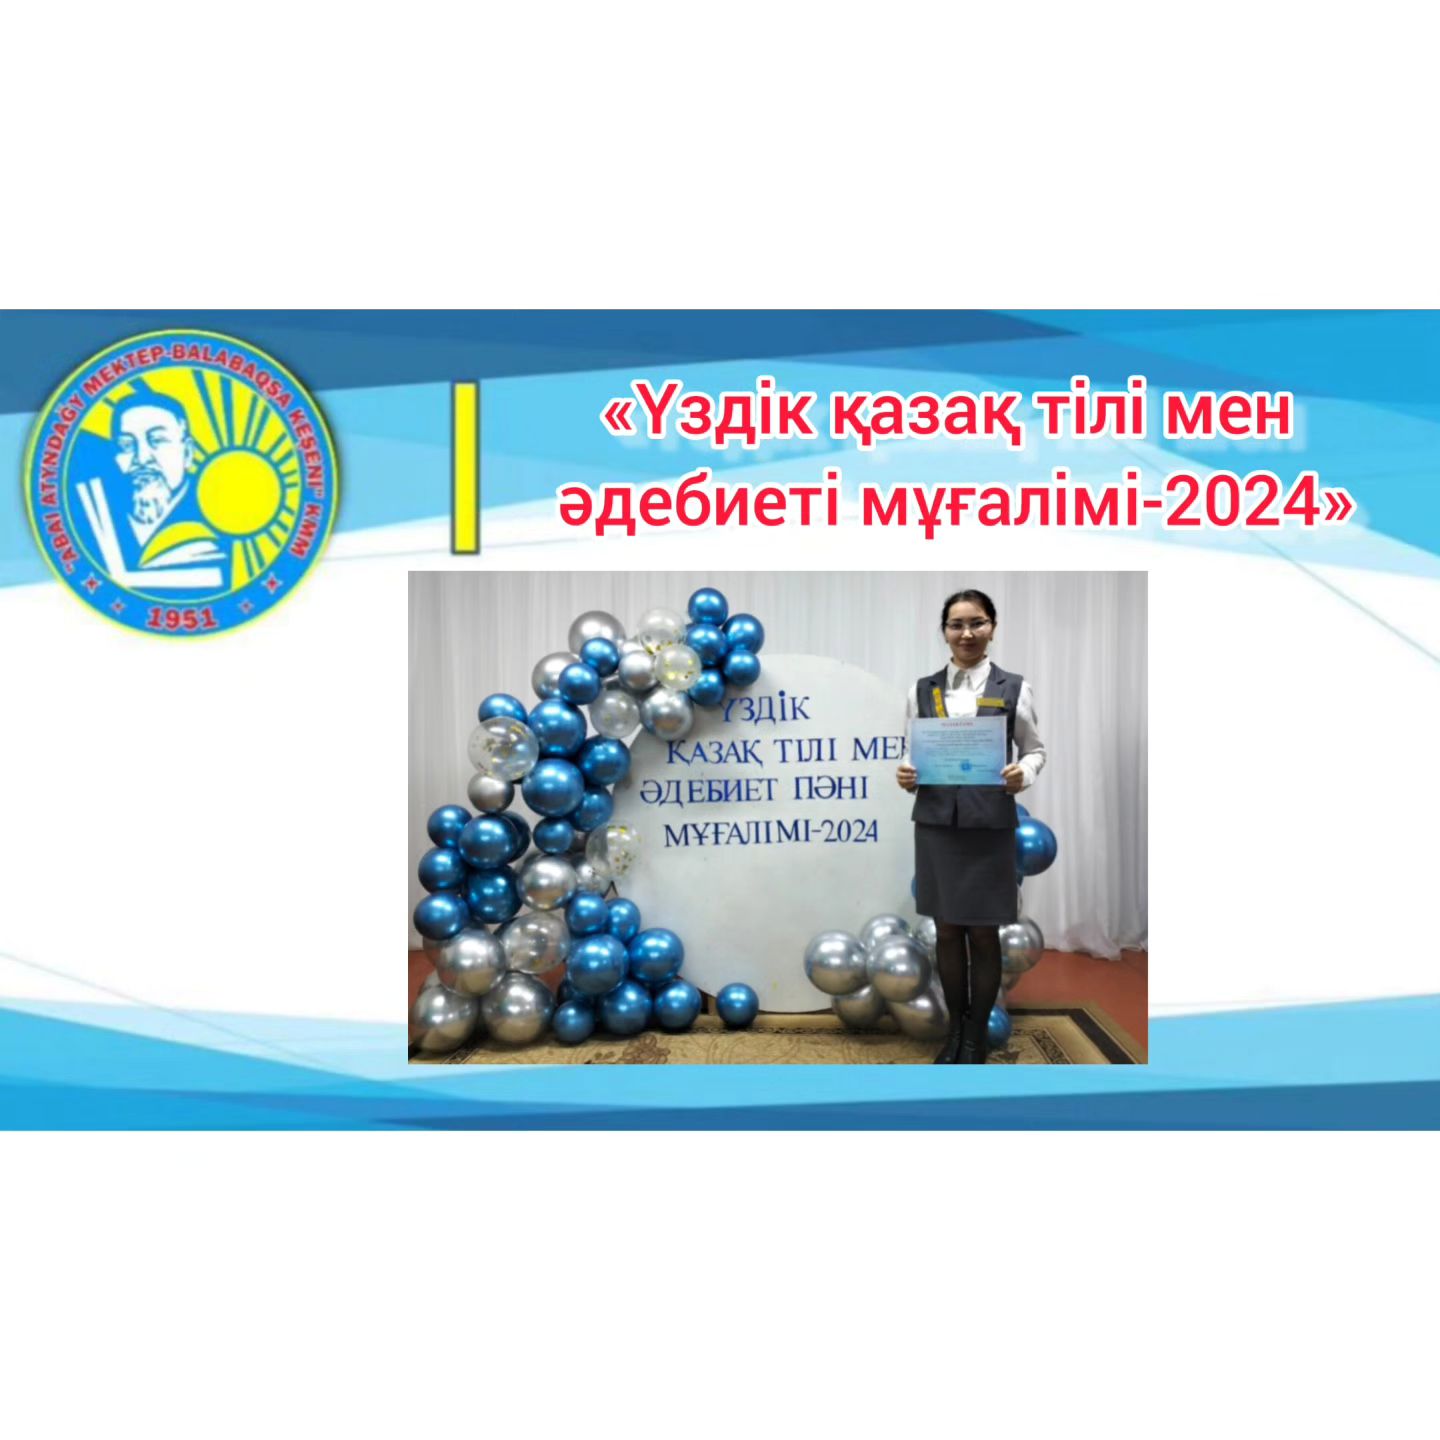 «Лучший қазақ тілі мен әдебиеті мұғалімі-2024» аудандық байқауы